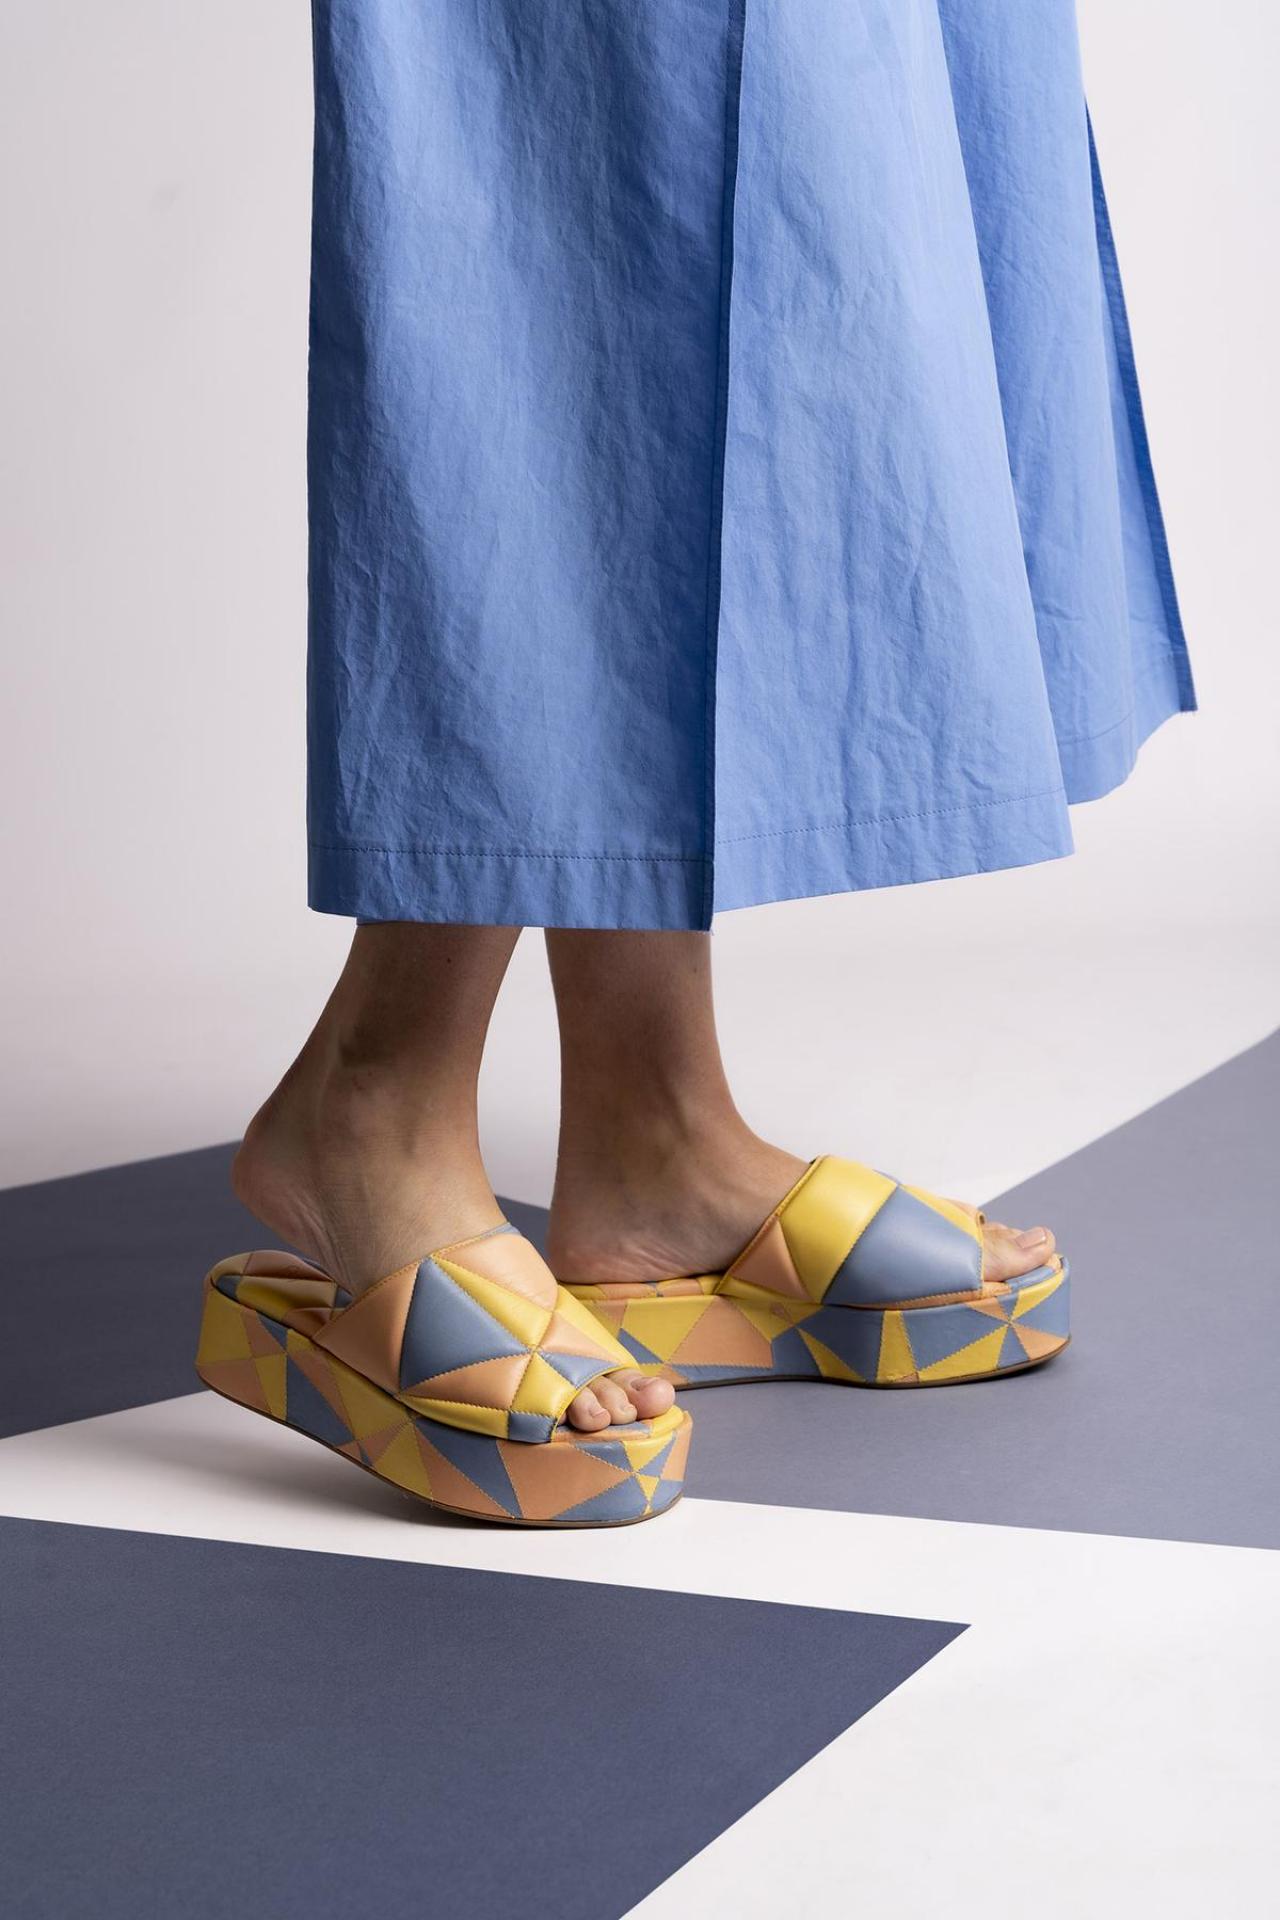 KleurenvakjesKleurrijke slippers met plateauzool en geometrisch motief (325 euro), van de Belgische designer Sam Reychler.